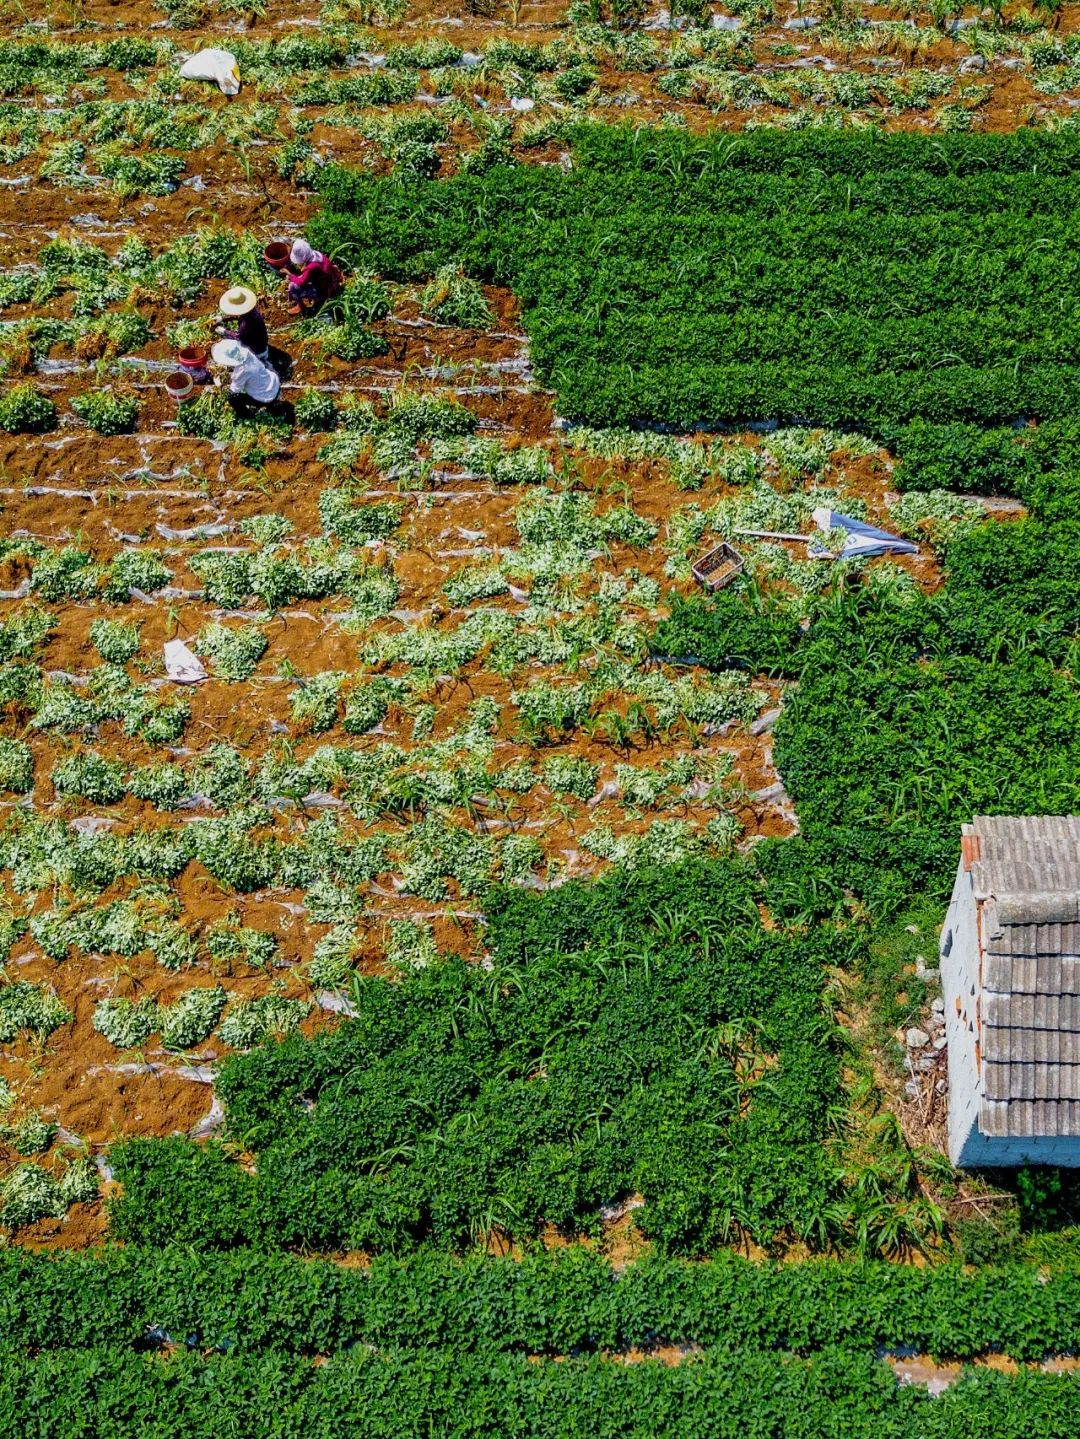 ▲ 江苏徐州贾汪区的红米花生到了收获季节。摄影/郑舟